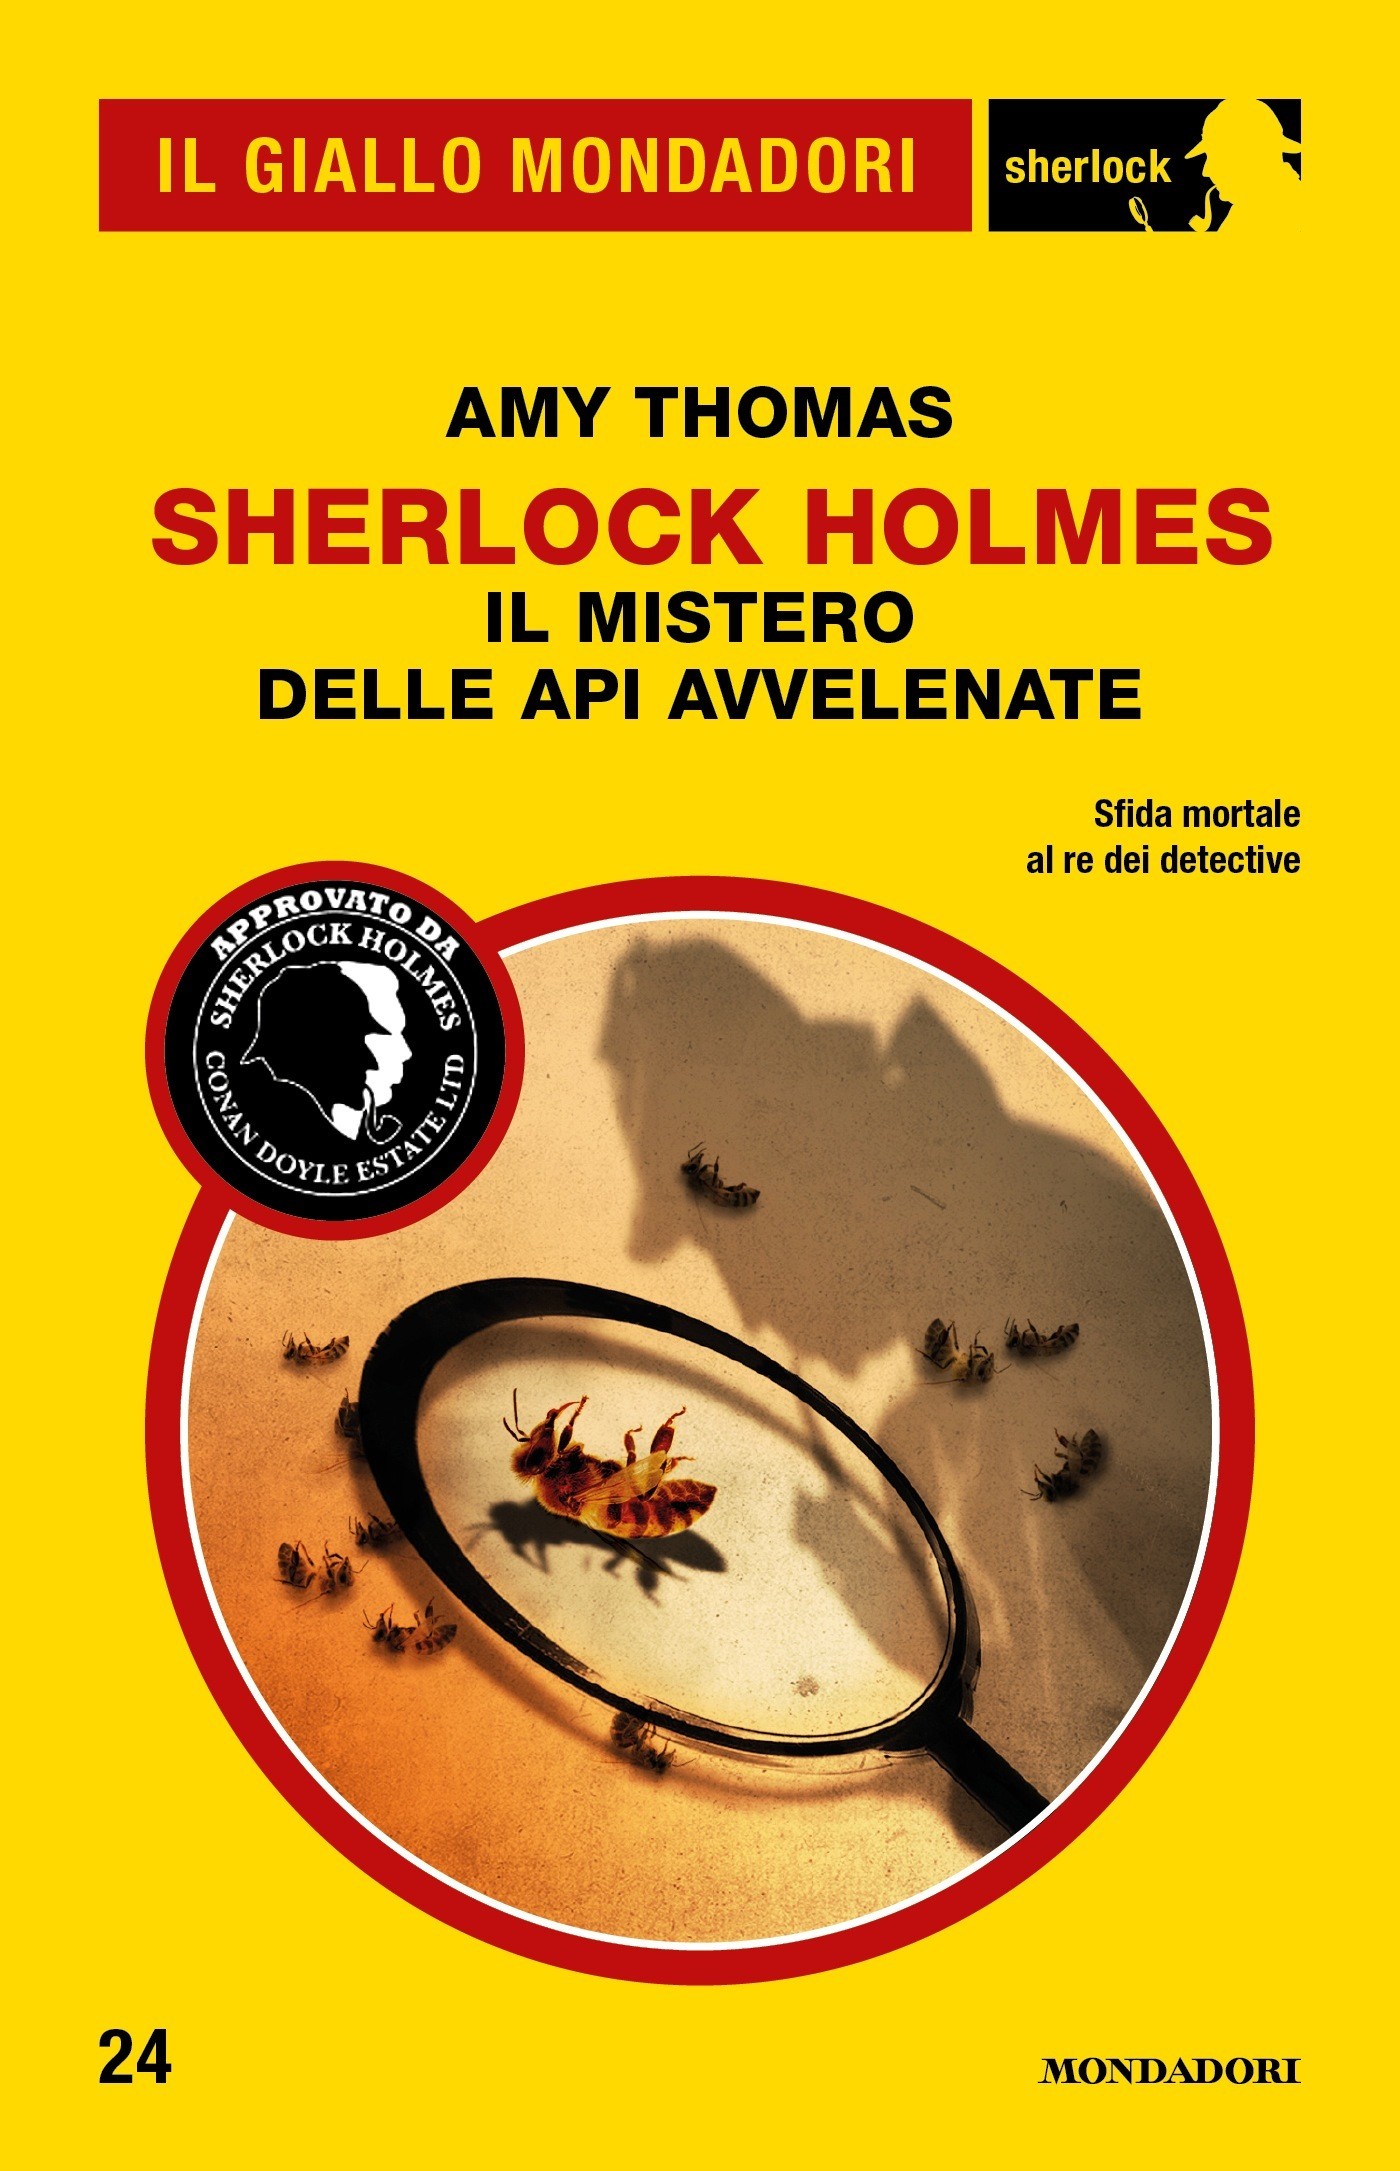 Sherlock Holmes - Il mistero delle api avvelenate (Il Giallo Mondadori Sherlock) - Librerie.coop